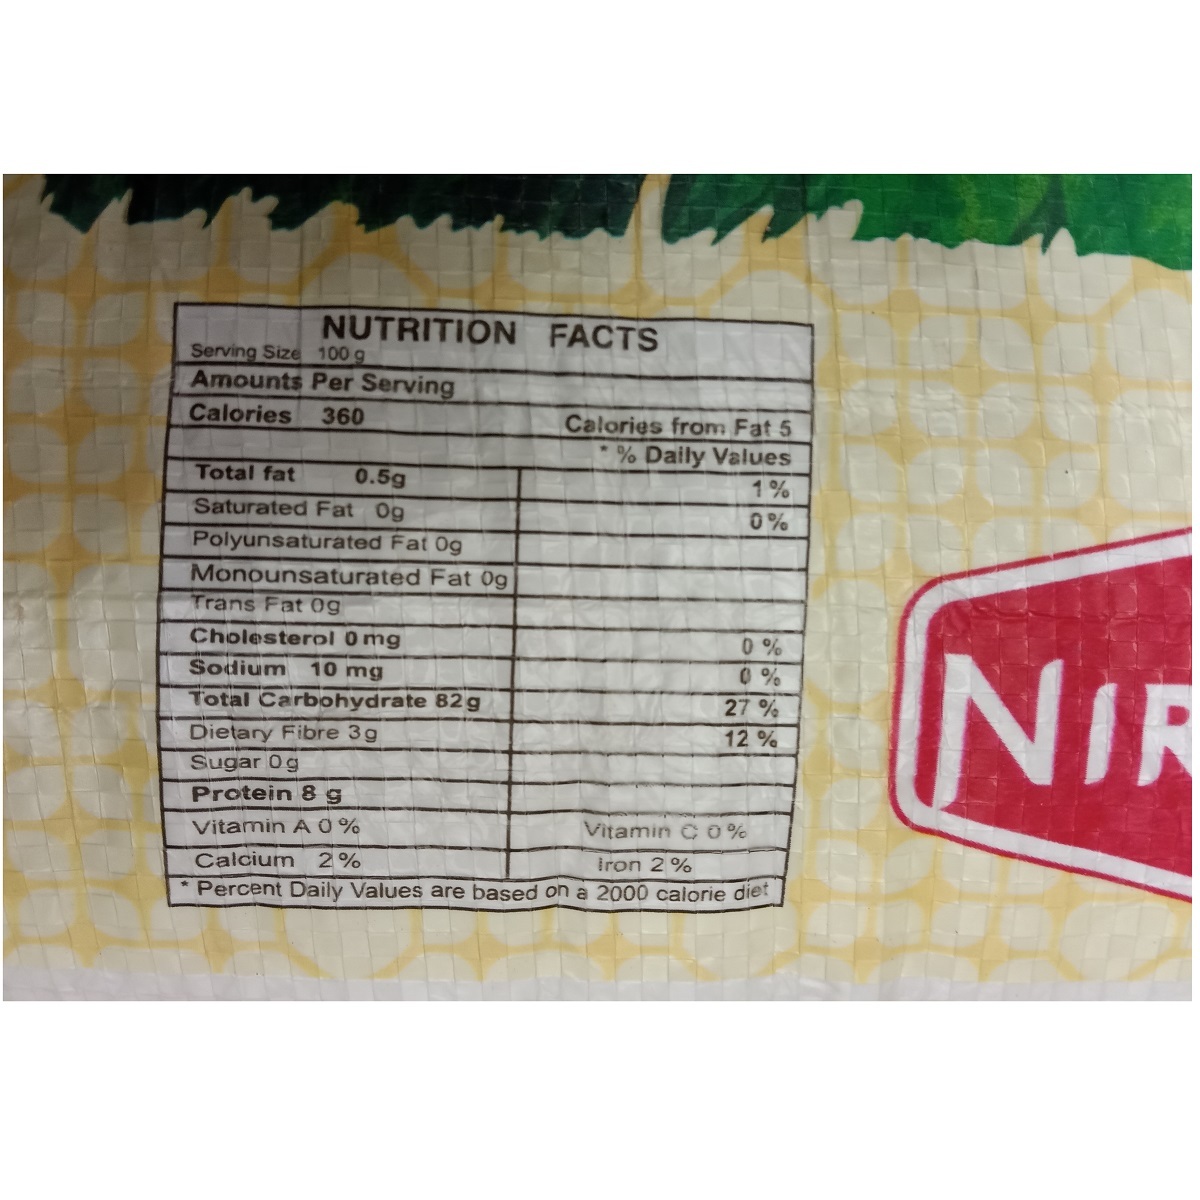 Nirapara Cherumani Rice 10kg